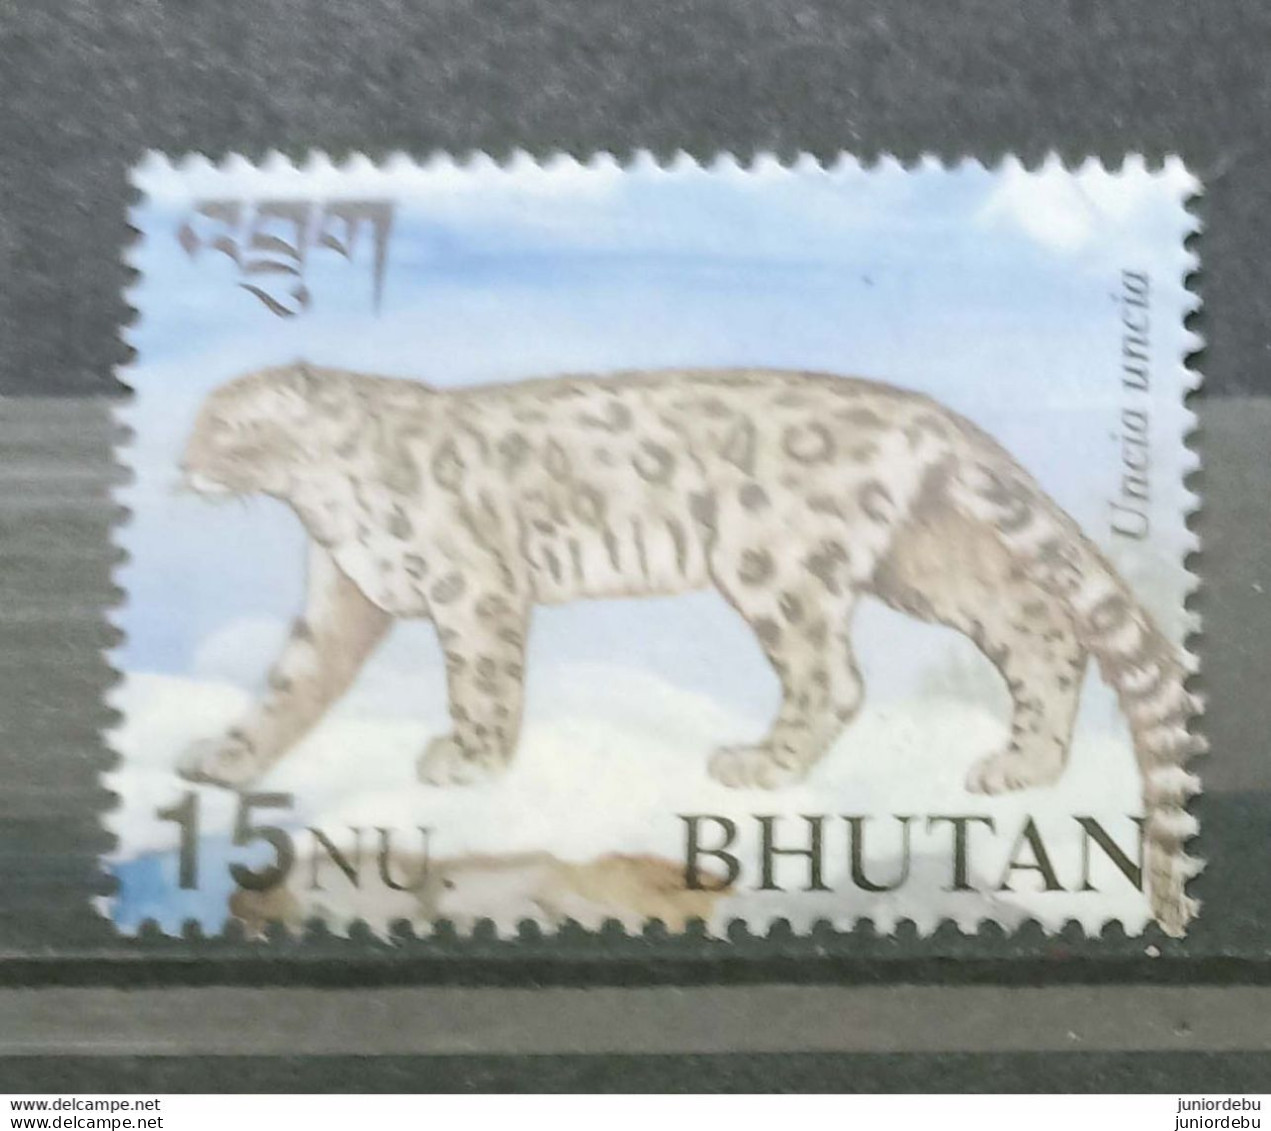 Bhutan - 2001 - Uncia Uncia  - MNH ( OL 11/02/2022) - Bhutan